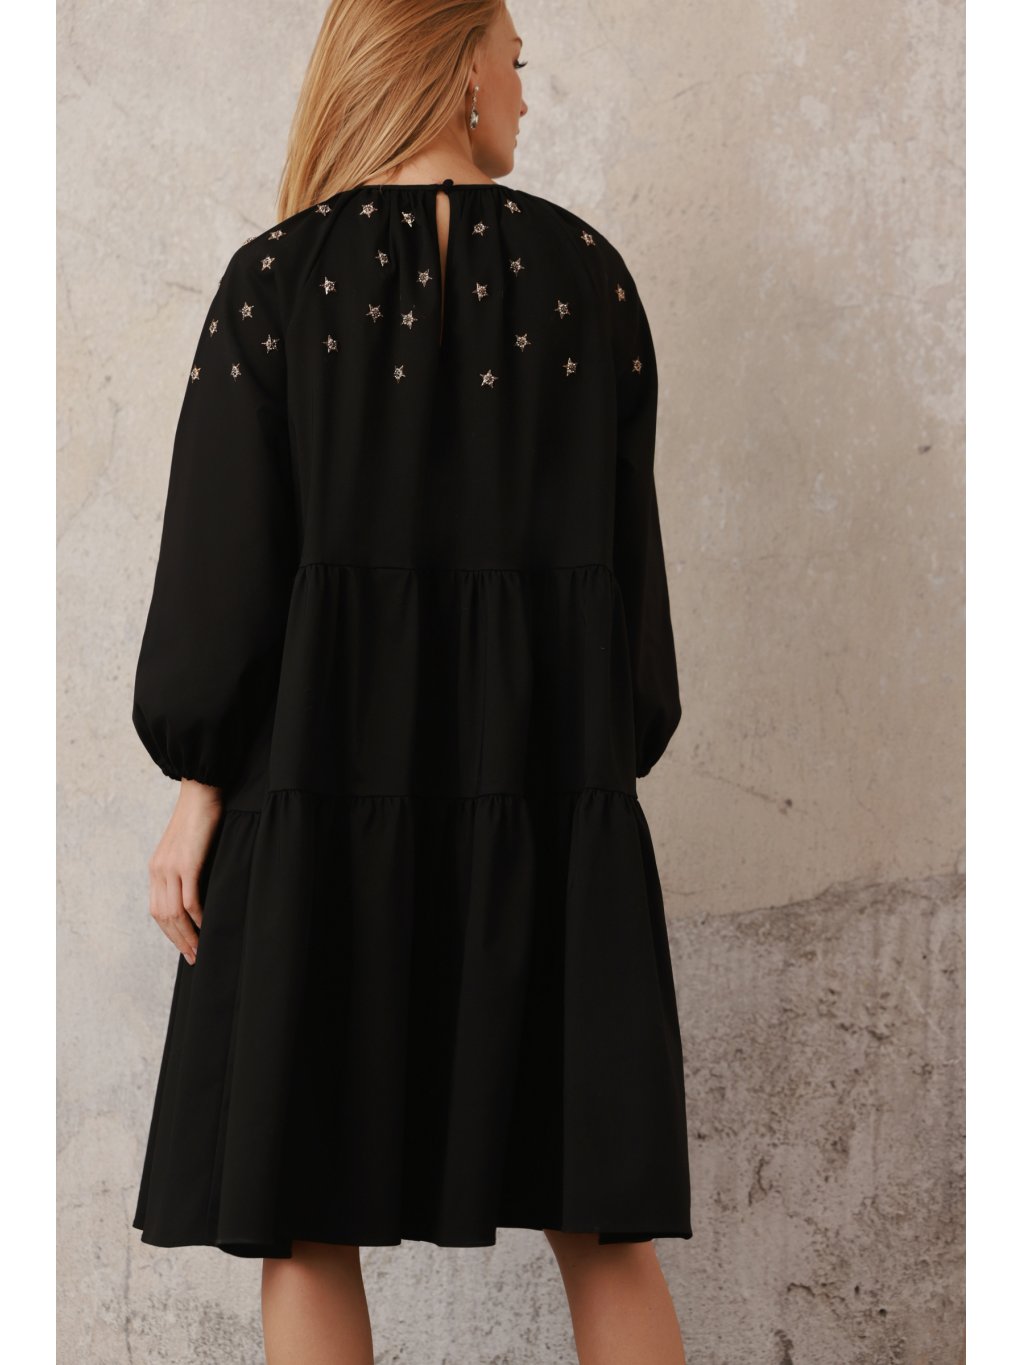 Šaty Tova Star černé s aplikací hvězd